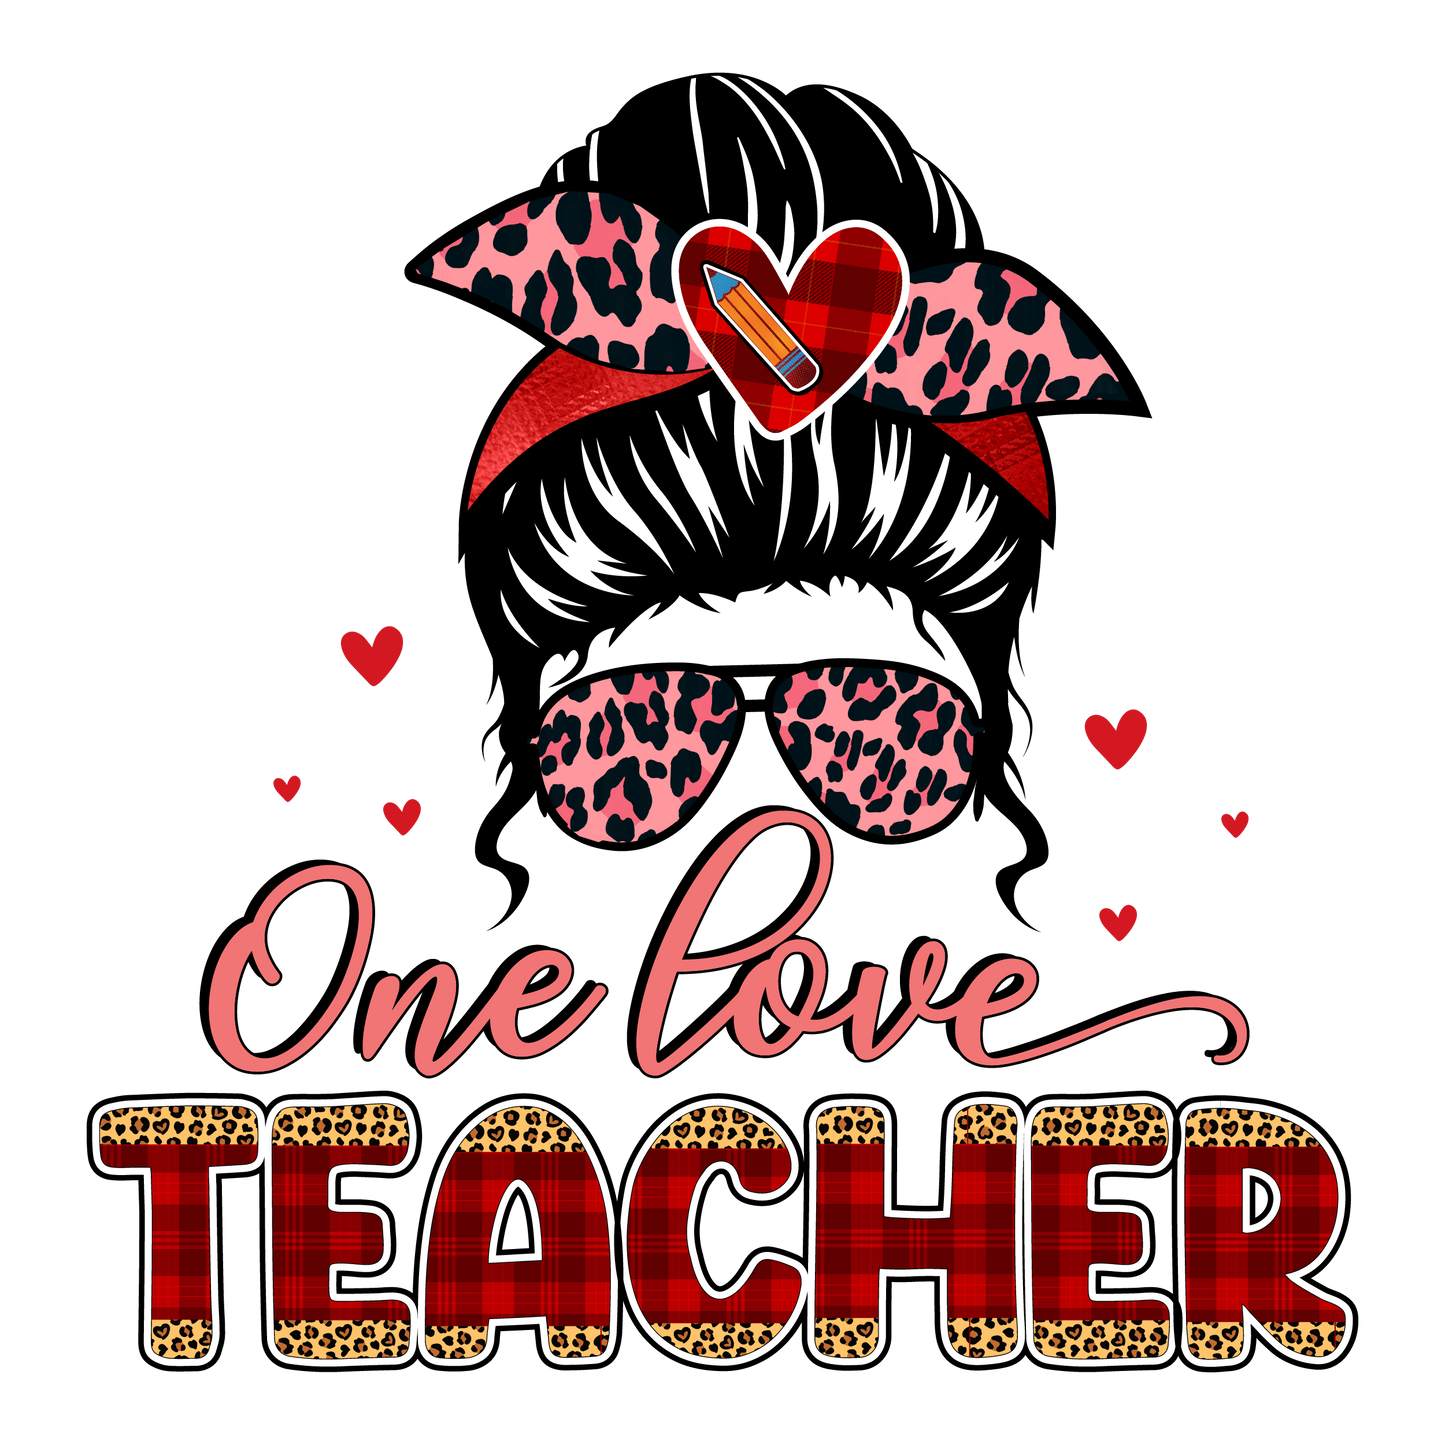 "One Love Teacher" Transfer